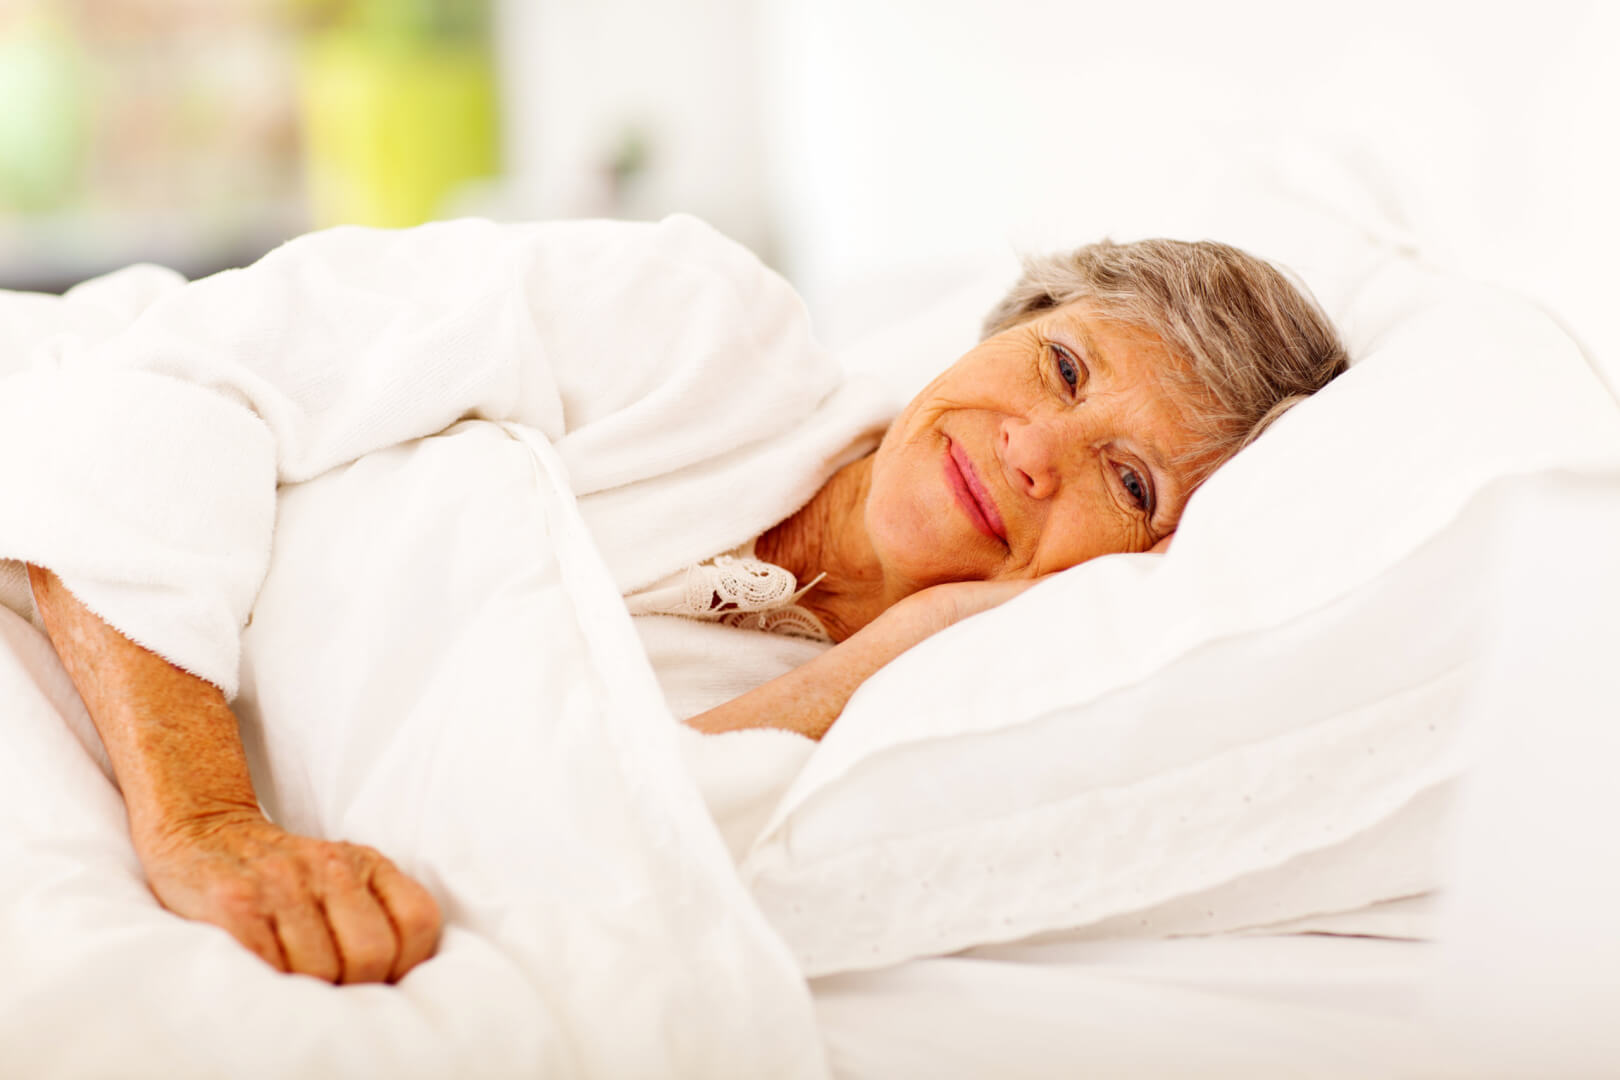 En la imagen aparece una mujer de edad avanzada en la cama sonriendo, recién despierta. Dormir con mayor calidad del sueño es uno de los propósitos más recomendables para personas mayores. 